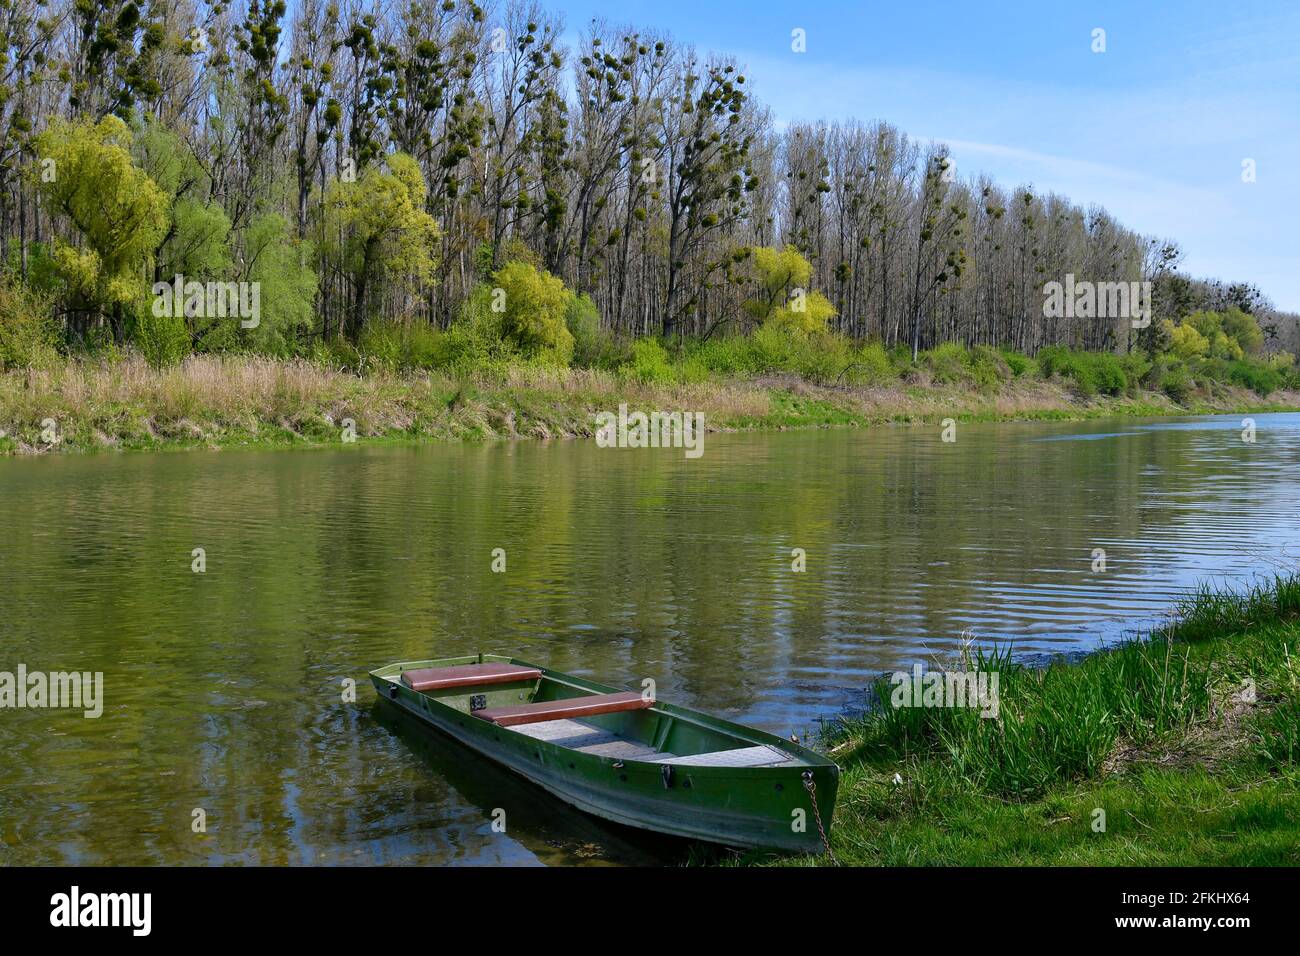 Autriche, paysage avec le lac de l'arbalète et arbres infestés de GUI dans le parc national de Donau-Auen en Basse-Autriche Banque D'Images